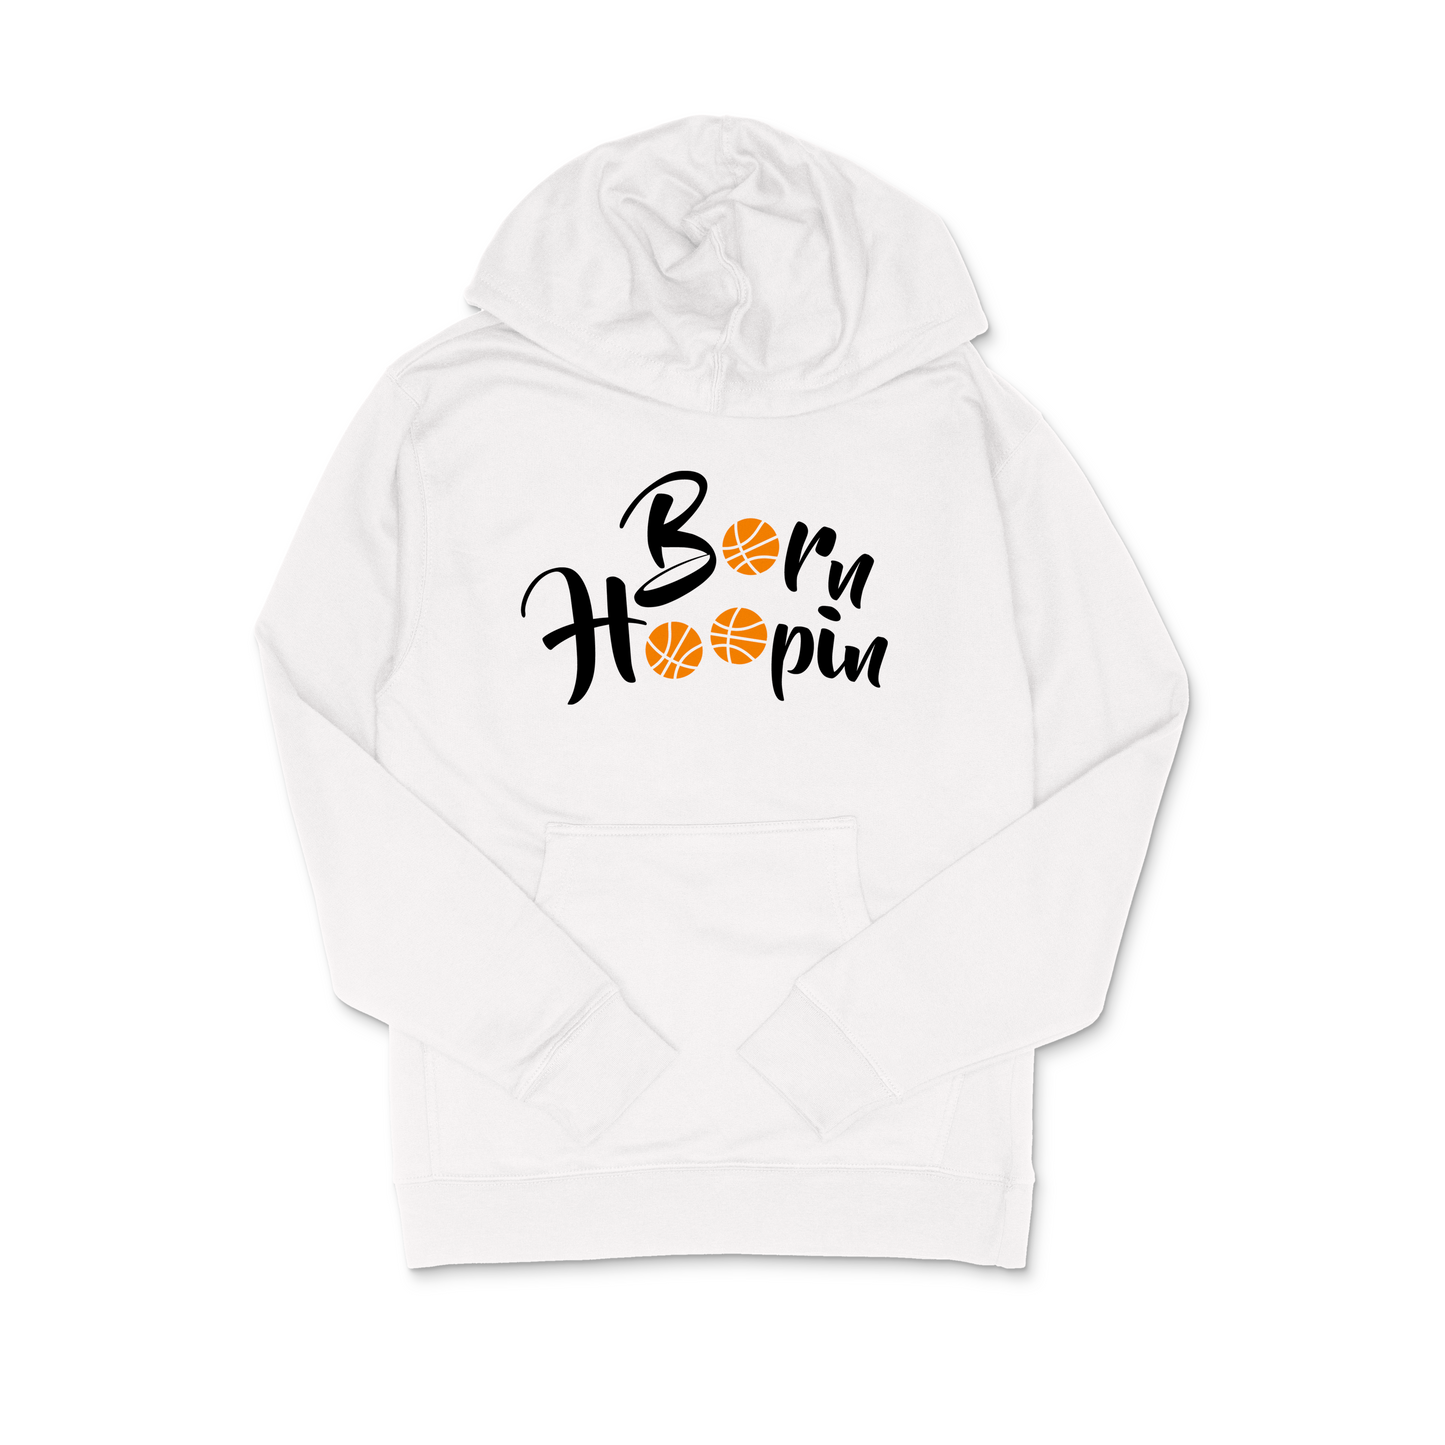 Born Hoopin Hooded Sweatshirt